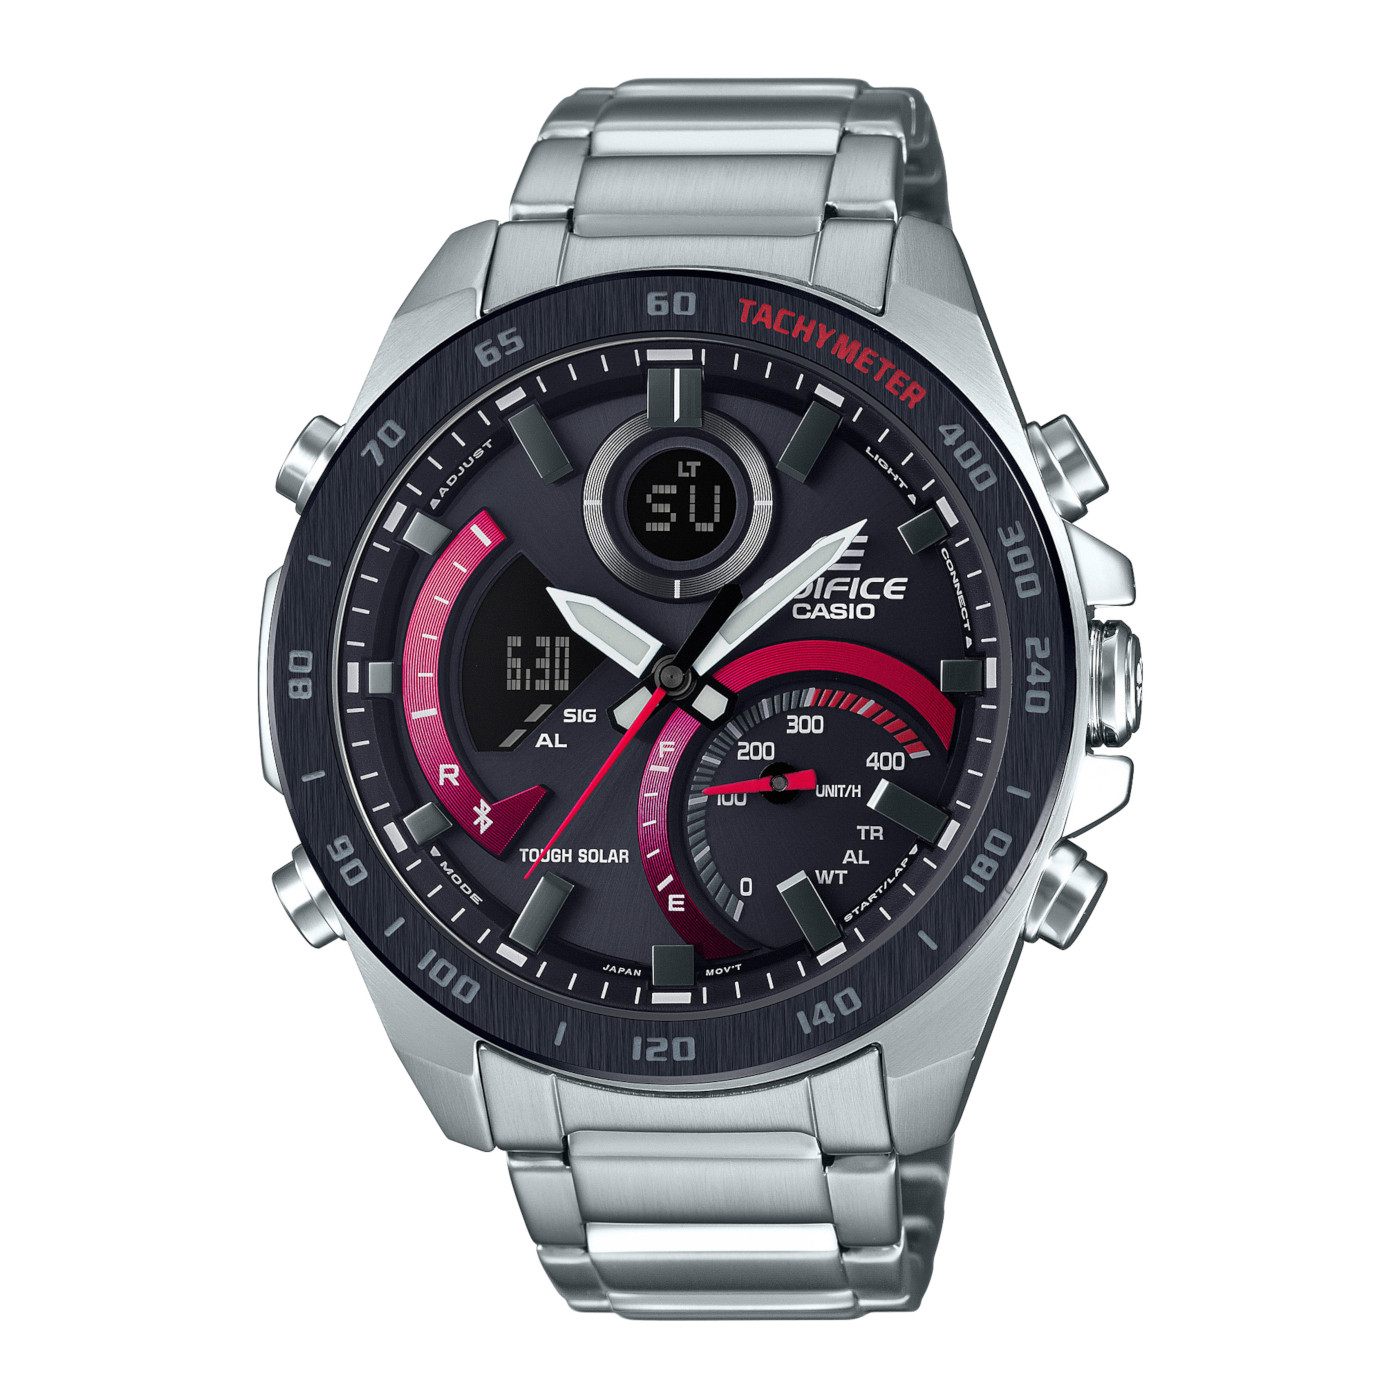 นาฬิกาข้อมือผู้ชาย CASIO EDIFICE สายสแตนเลส รุ่น ECB-900DB-1A Silver / Red สินค้าประกัน1ปีเต็ม สินค้าพร้อมจัดส่ง สวยหรูราคาถูกสุดๆ